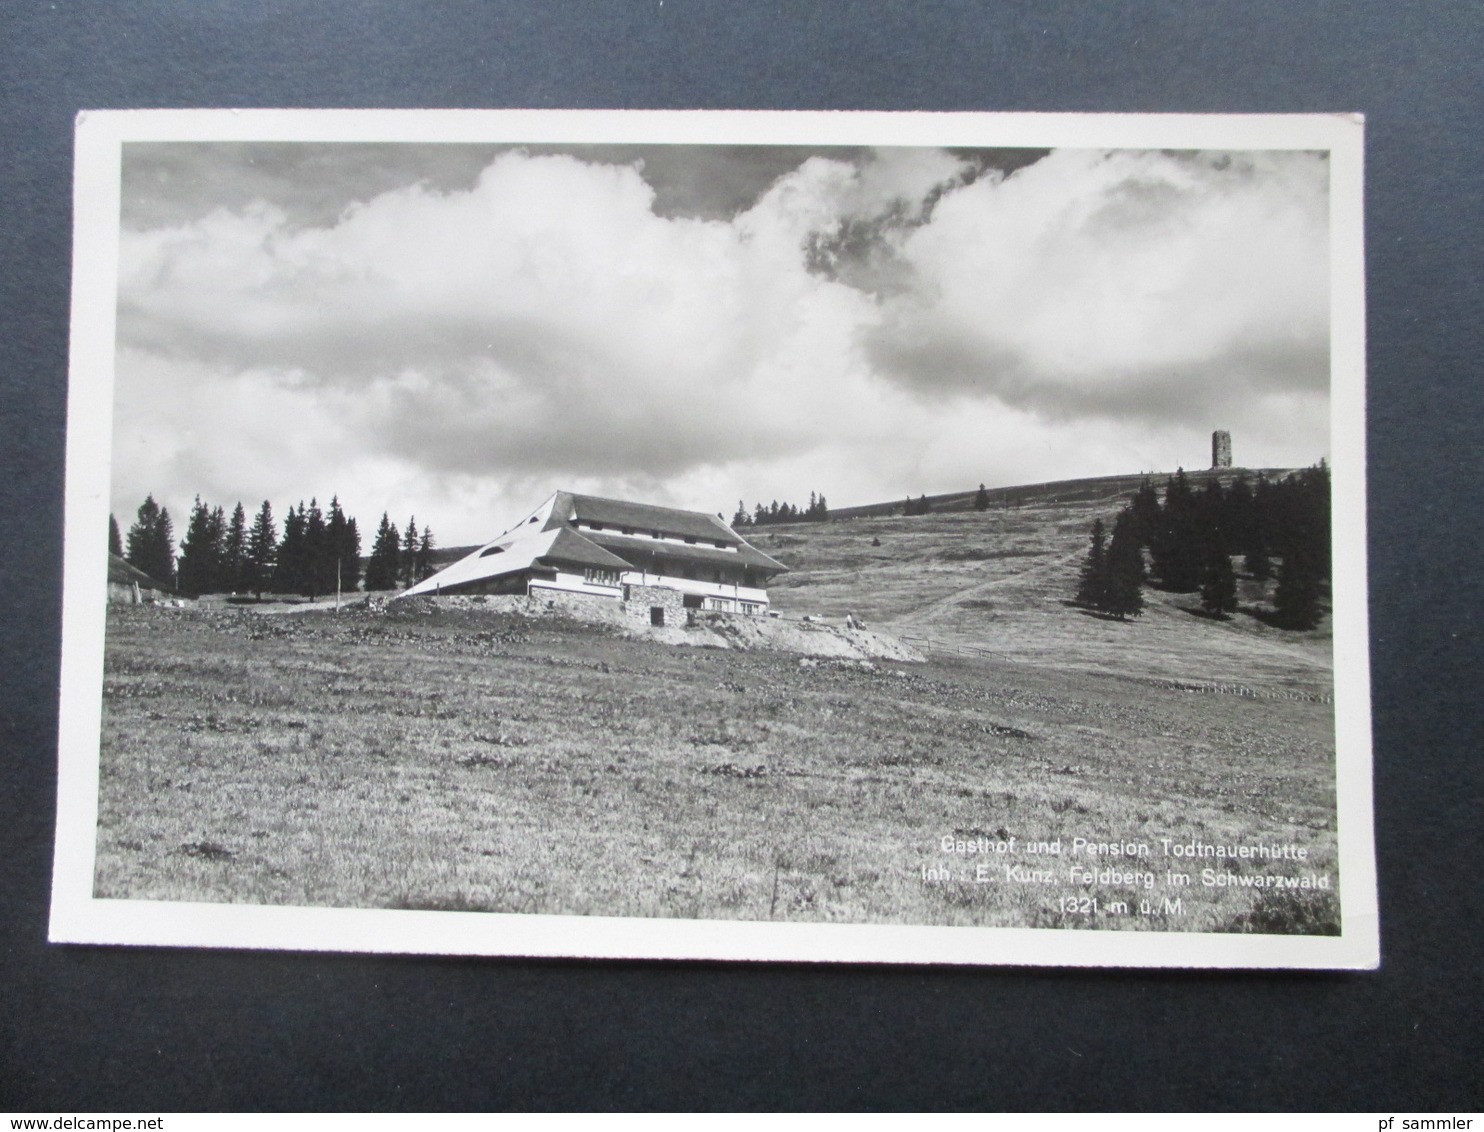 AK Echtfoto 1938 Gasthof Und Pension Todtnauerhütte Inh. E. Kunz, Feldberg Im Schwarzwald - Alberghi & Ristoranti